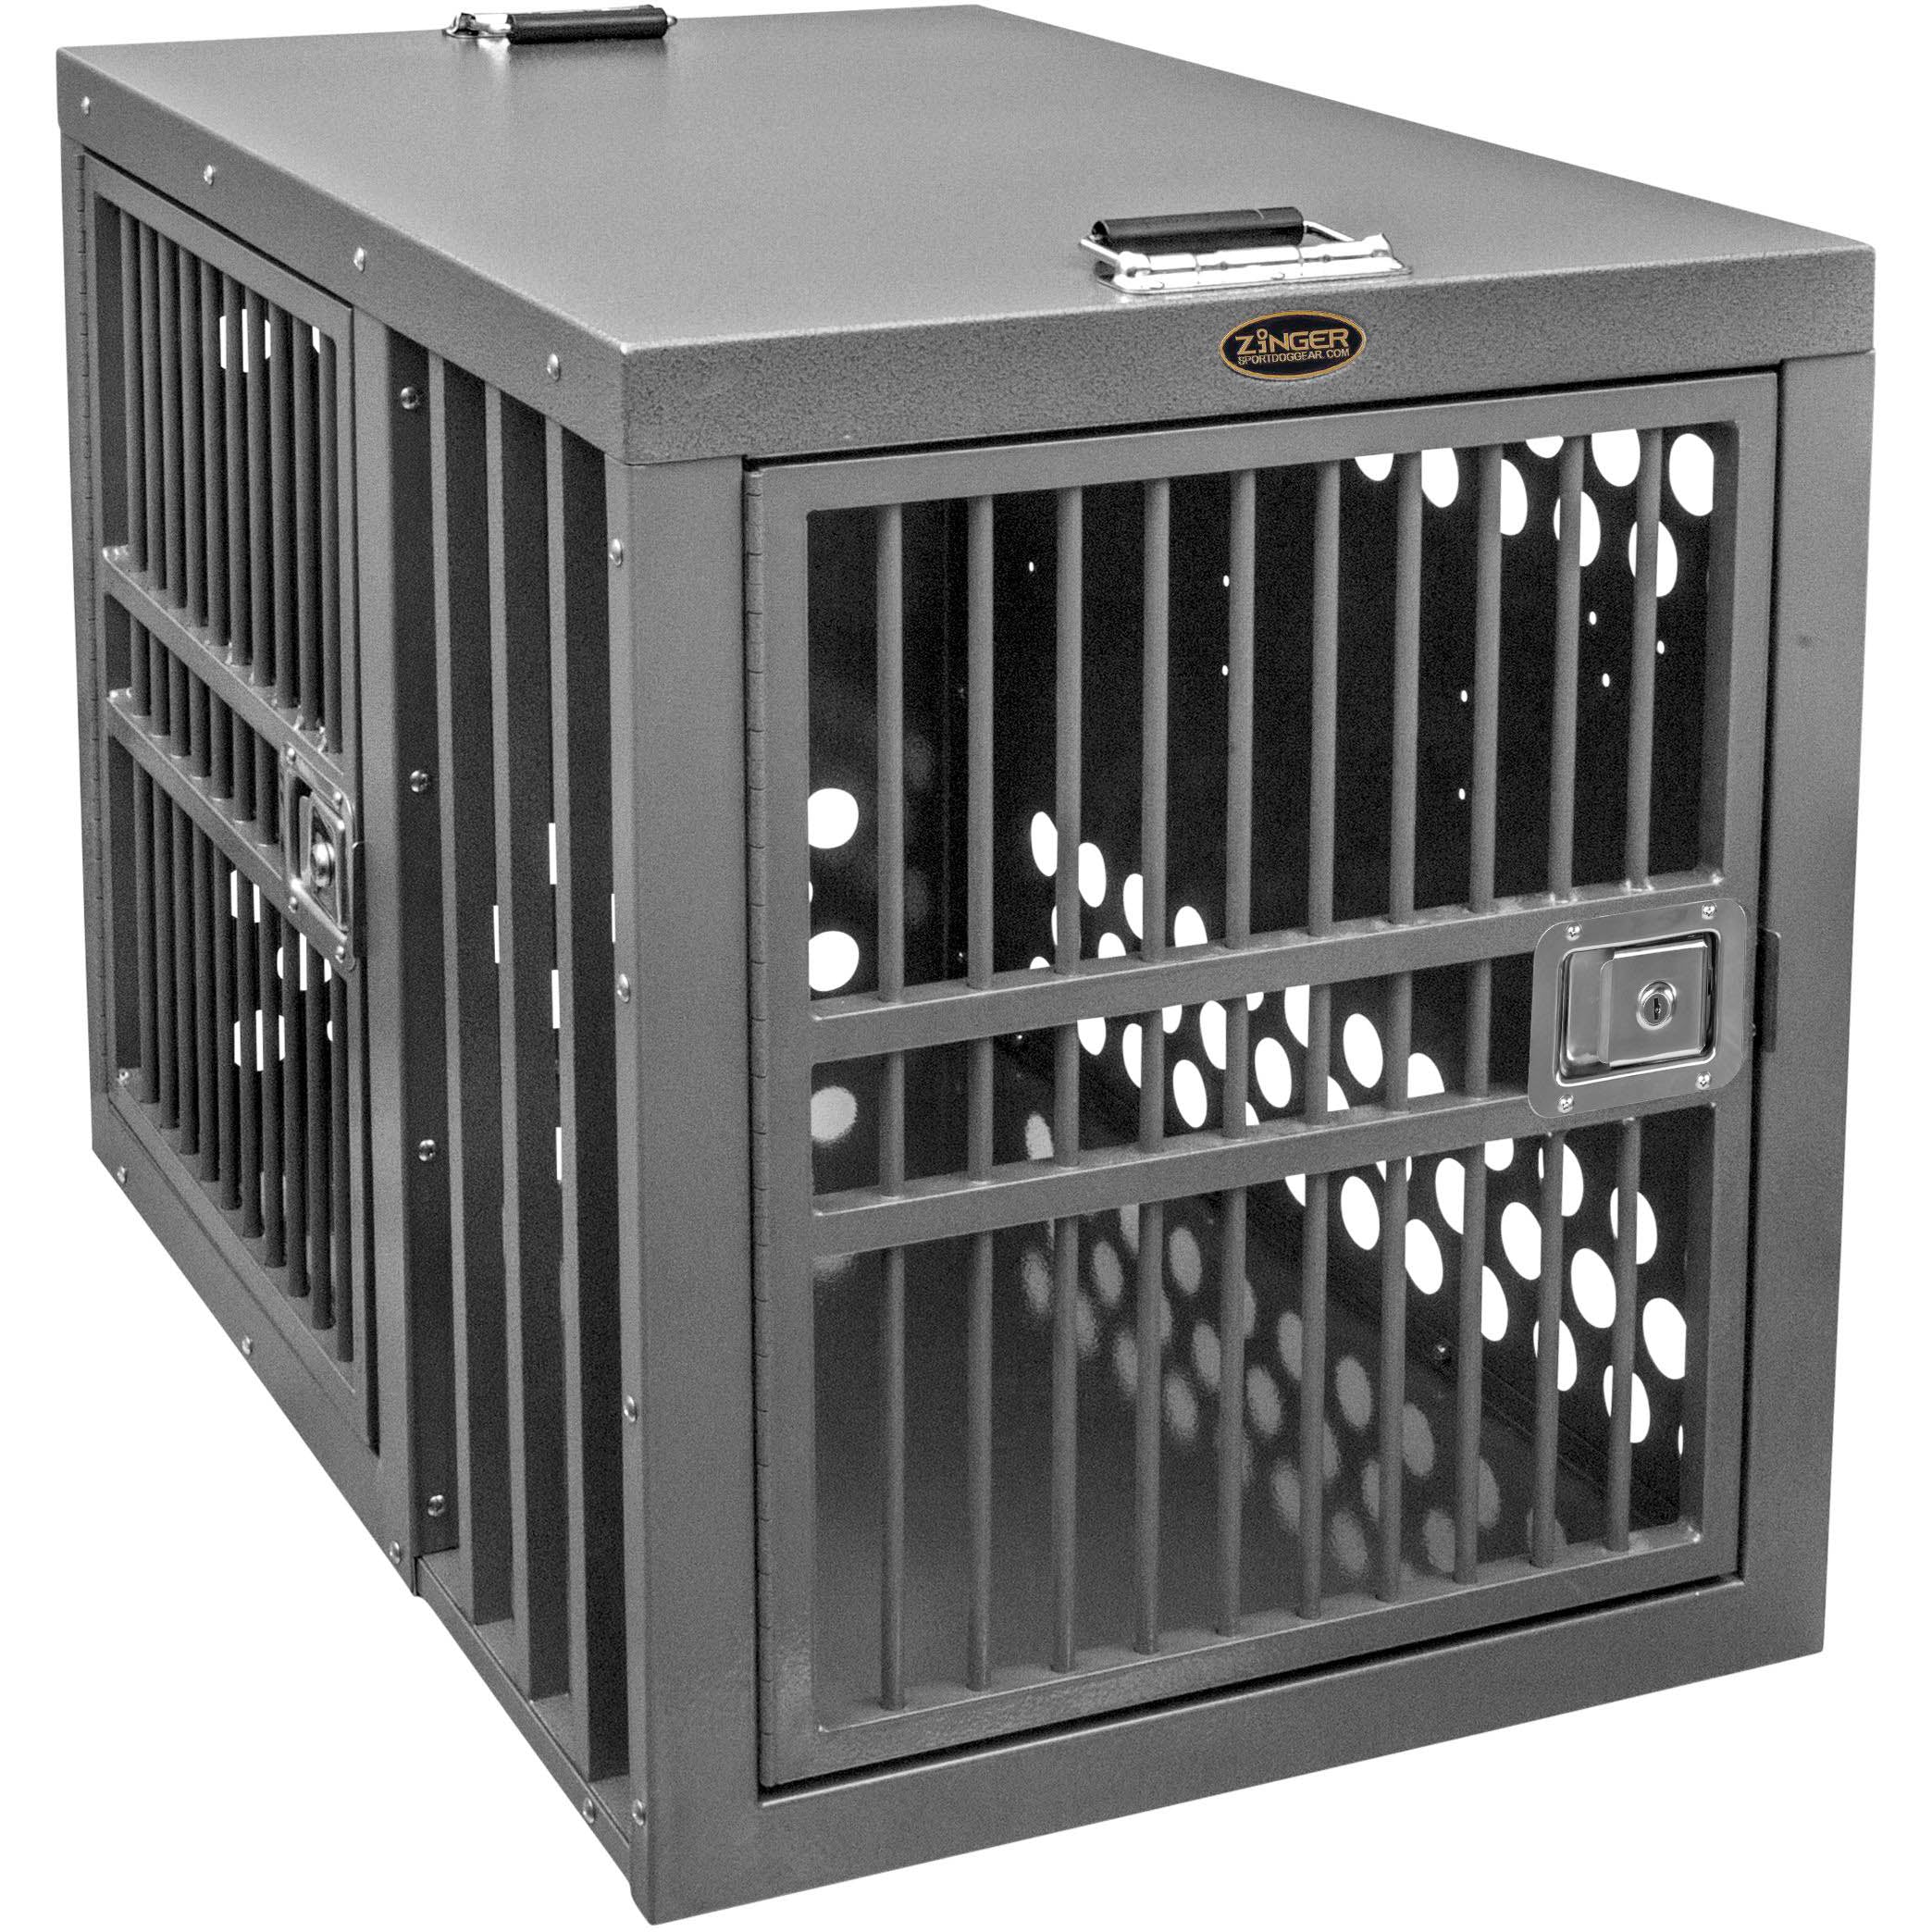 Zinger Deluxe 4000 Crate